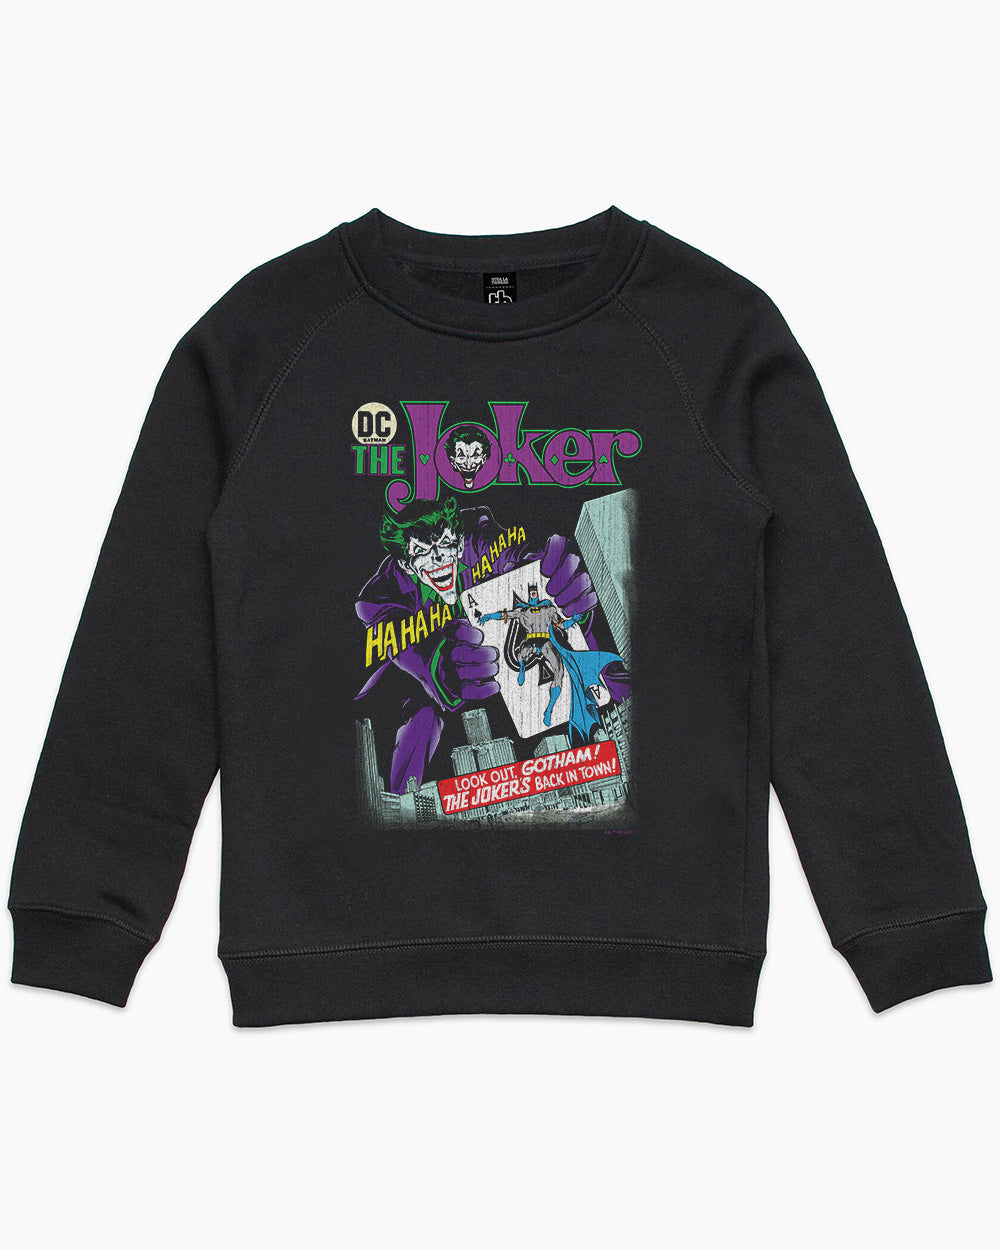 The Joker's Back In Town Kids Jumper Europe Online #colour_black